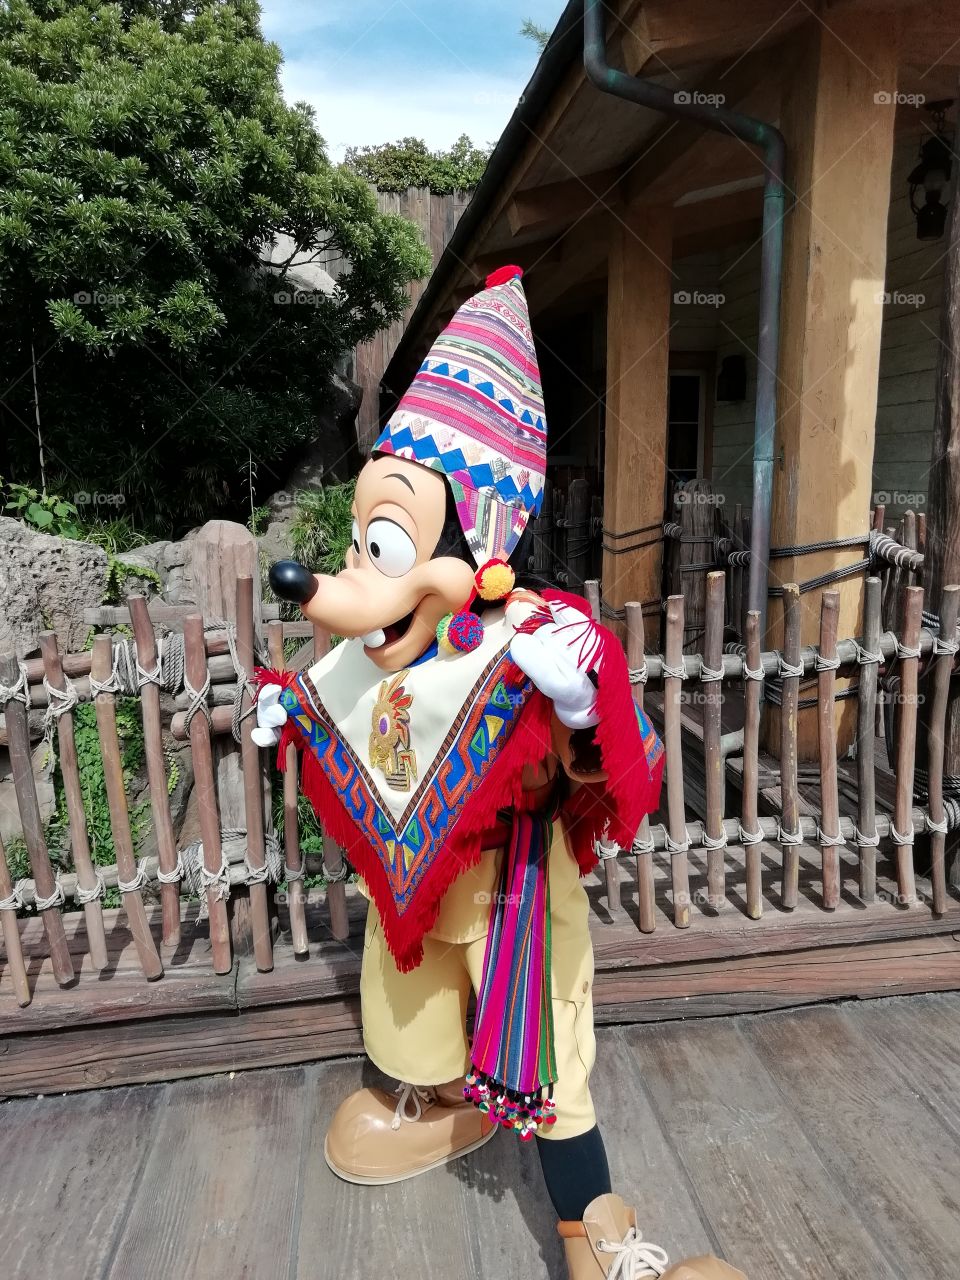 Gufi at Disney Land Japan